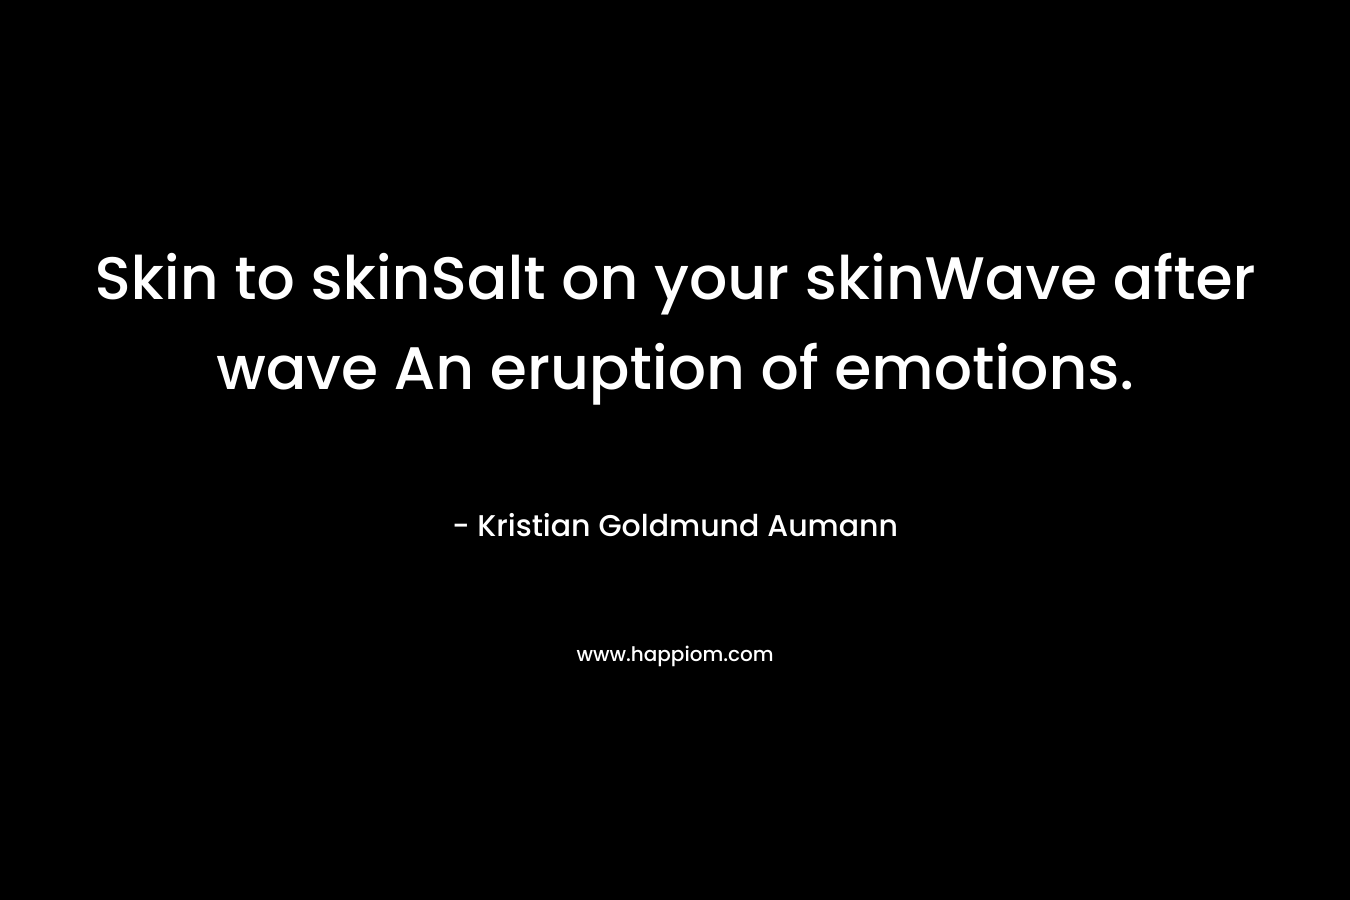 Skin to skinSalt on your skinWave after wave An eruption of emotions. – Kristian Goldmund Aumann